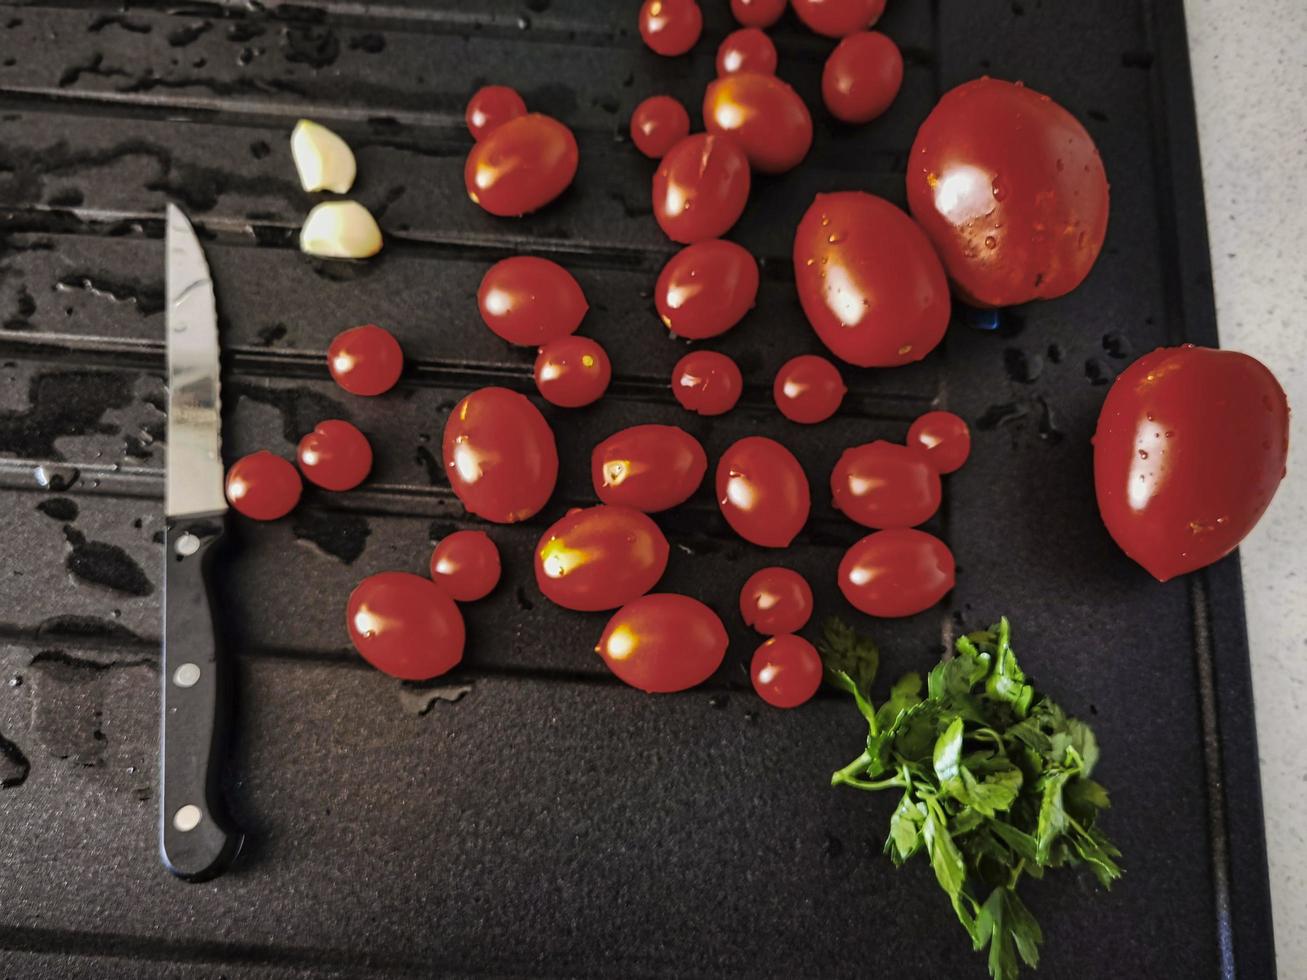 tomates cherry, ajo y perejil en la cocina italiana listos para ser degustados y consumidos foto